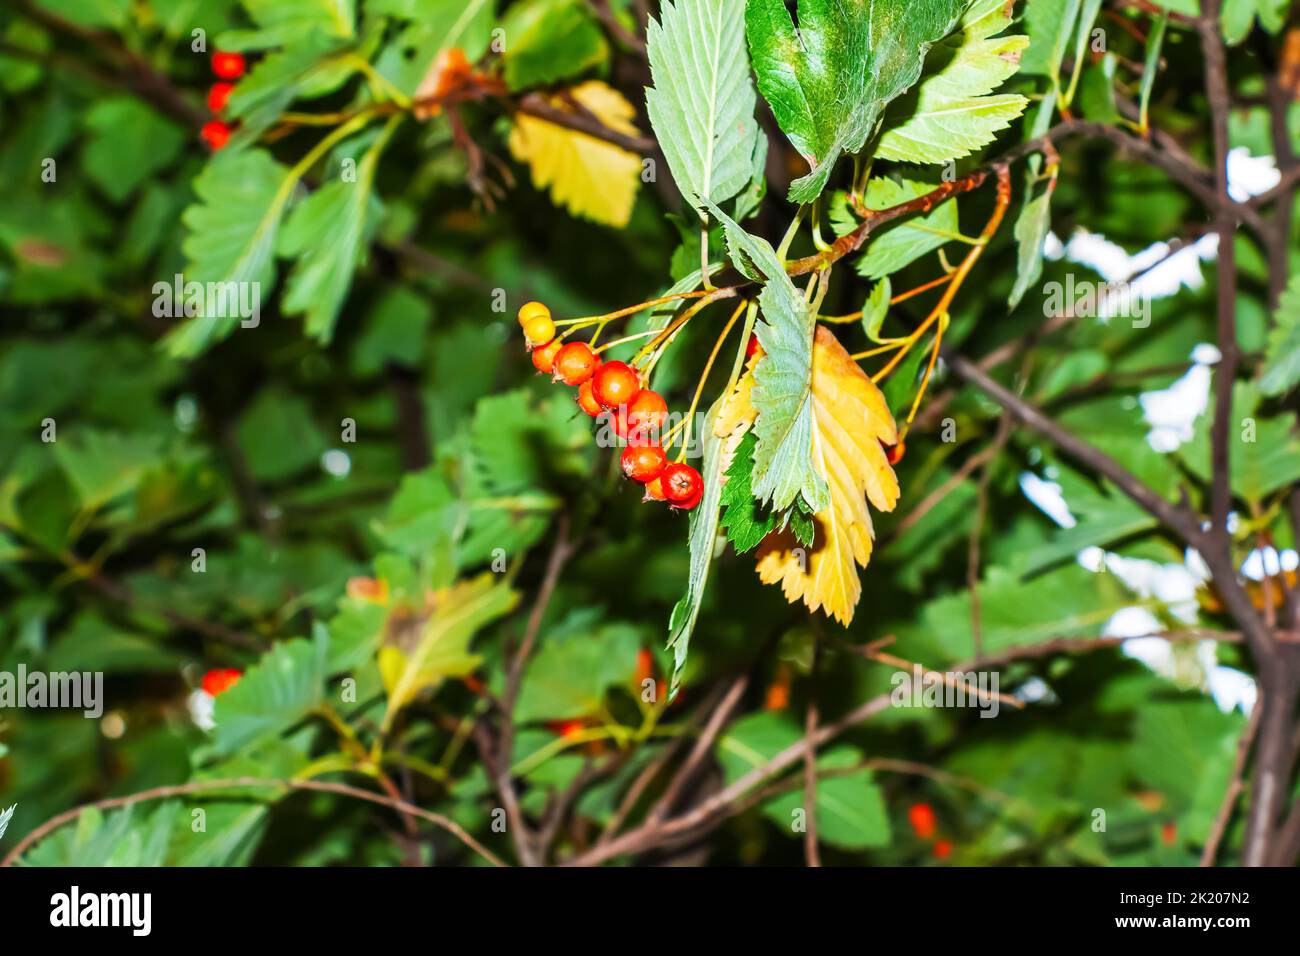 Leuchtend rote Beeren des Blutes Rothawthorn CRATAEGUS SANGUINEA PALL, wächst natürlich. Sie werden in der Kräutermedizin für Beschwerden sowie in c verwendet Stockfoto